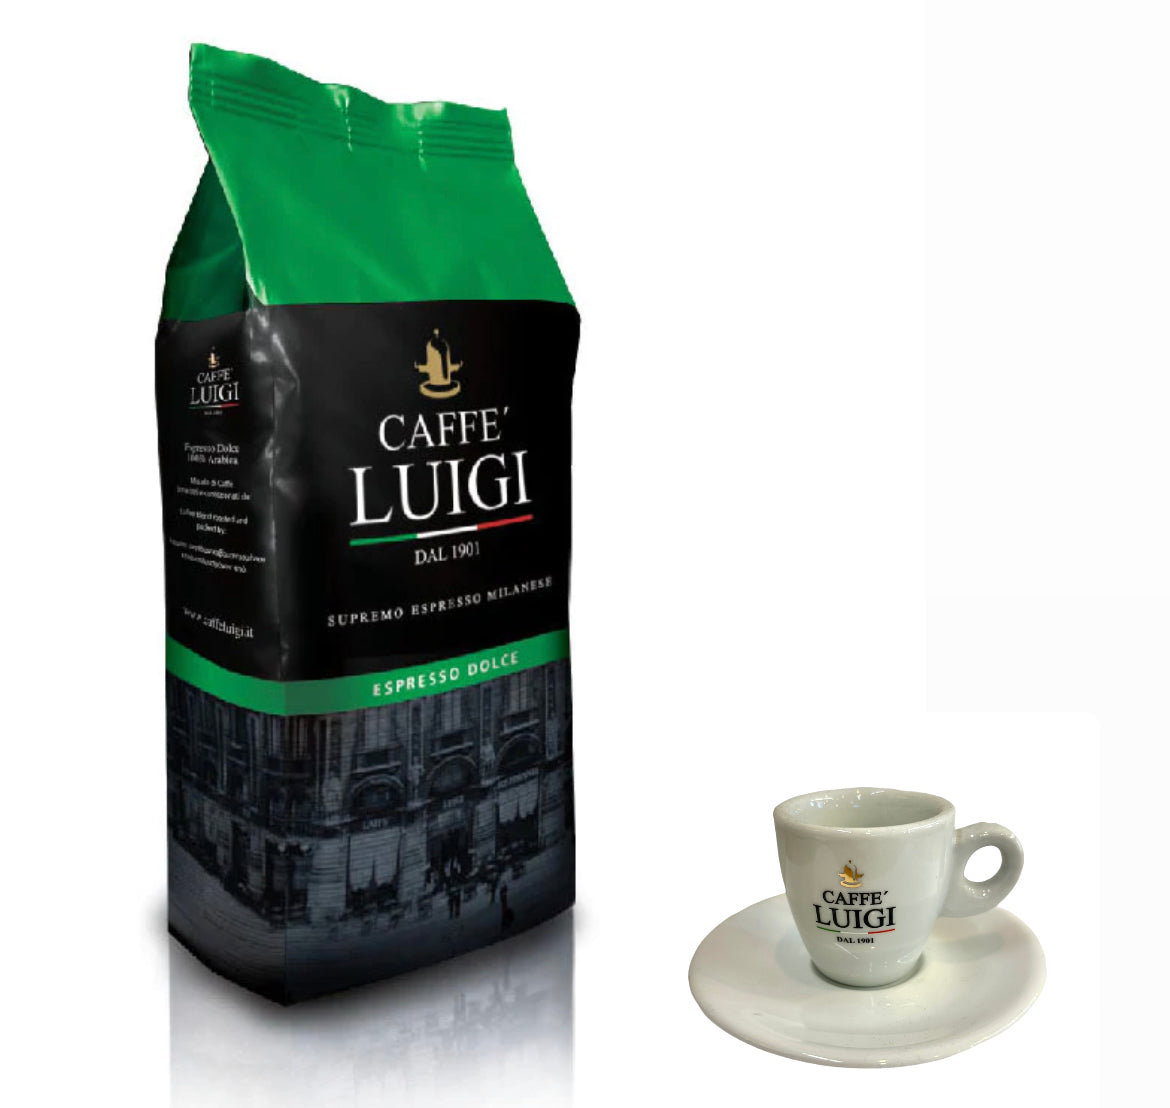 Espresso DOLCE Bohnen Beans 1Kg Caffe 'Luigi 100% Arabica + 1 Espresso Tasse Weiß